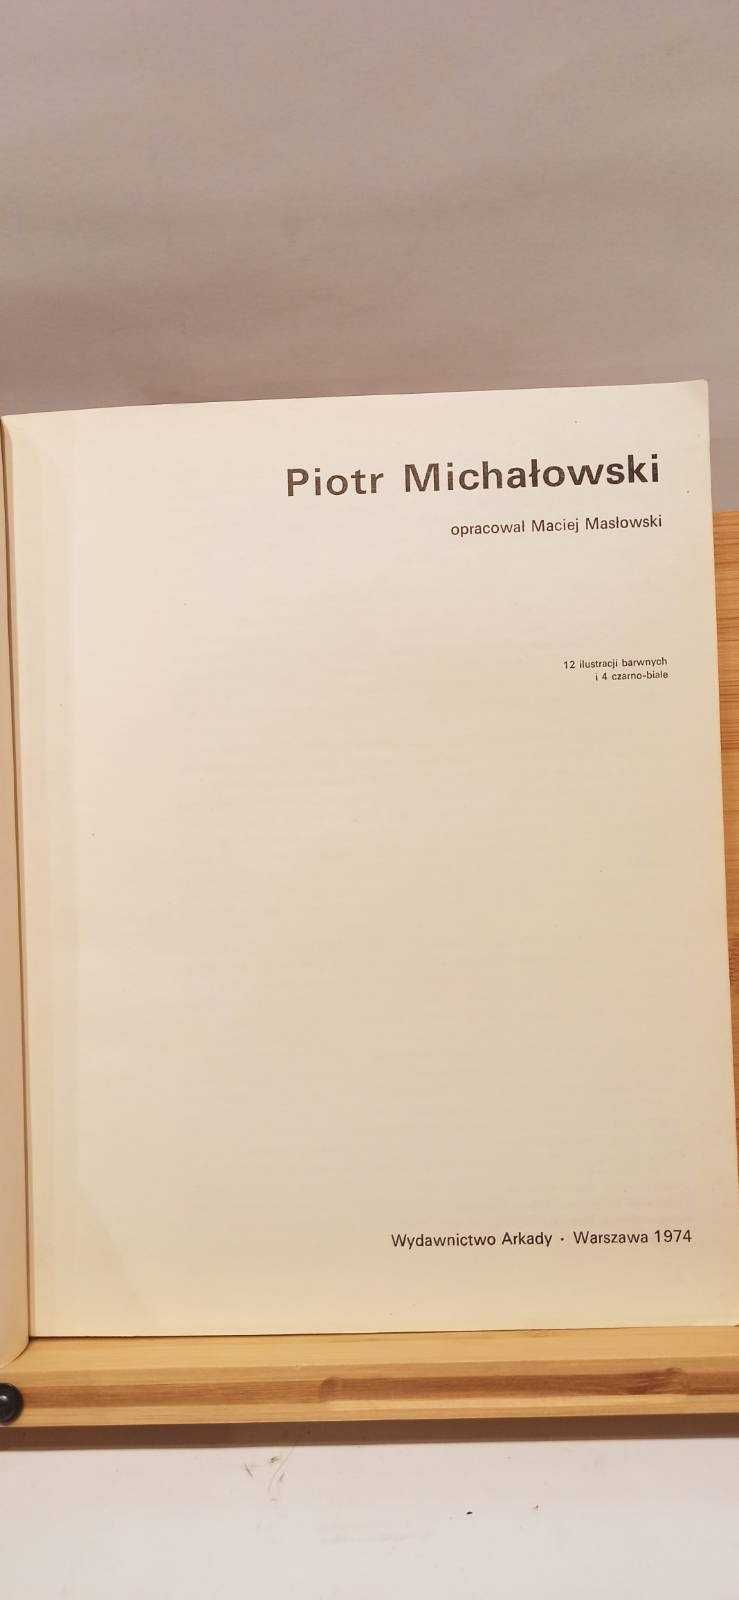 Piotr Michałowski / W kręgu sztuki / album / 1974